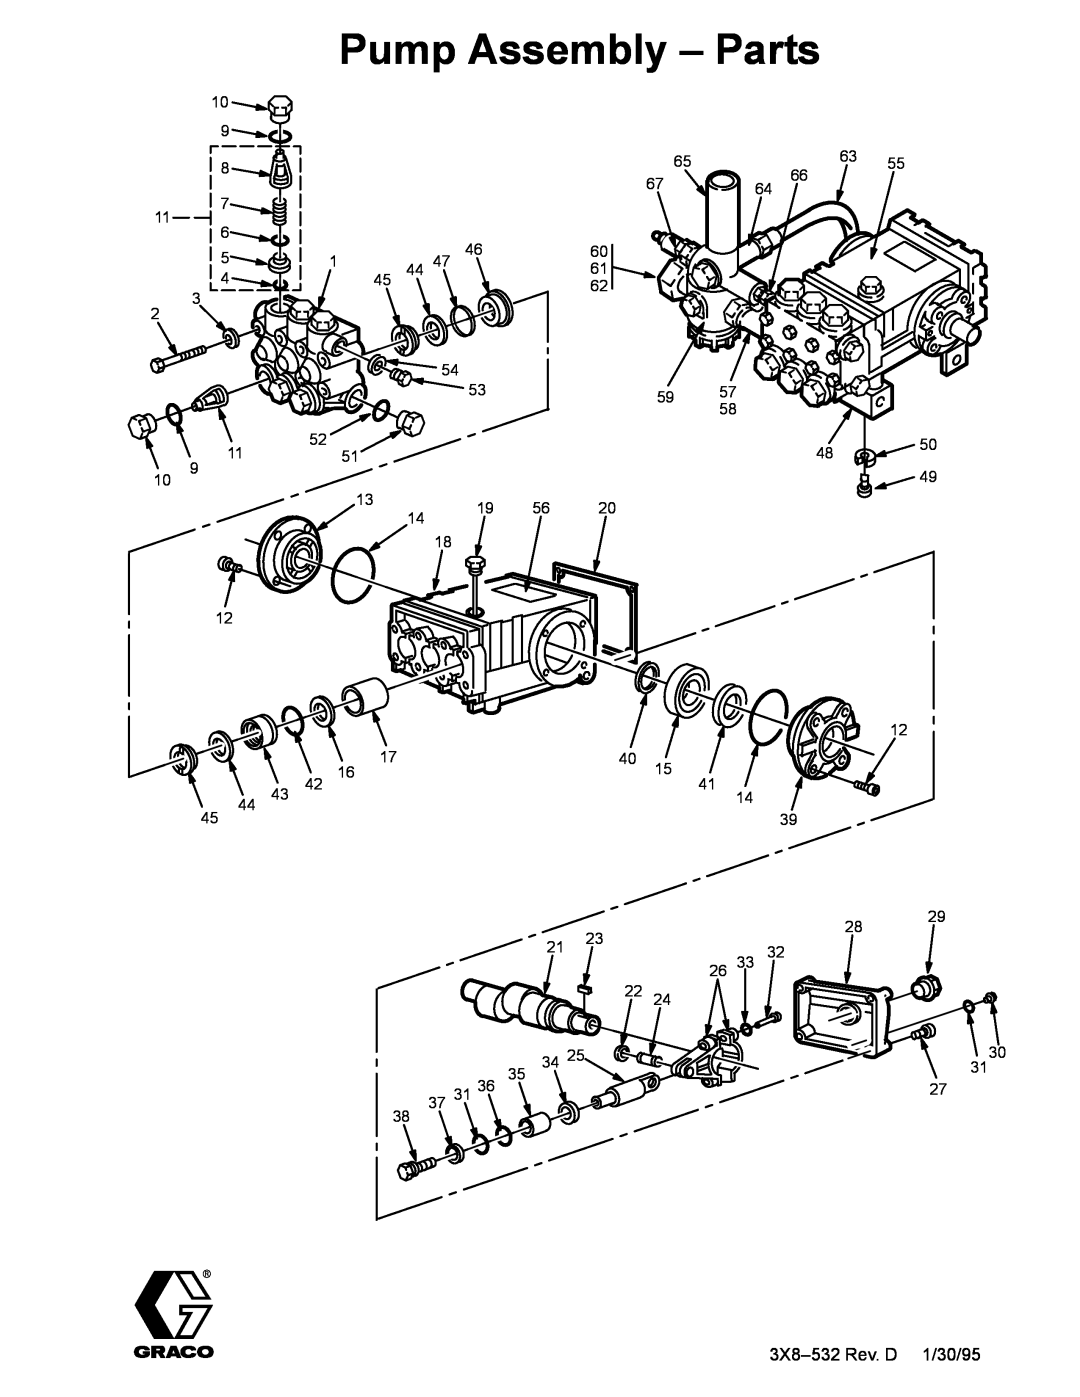 Graco Inc 308-532, 800-707, 800-706 manual Pump Assembly - Parts, 3X8-532 Rev. D 1/30/95 